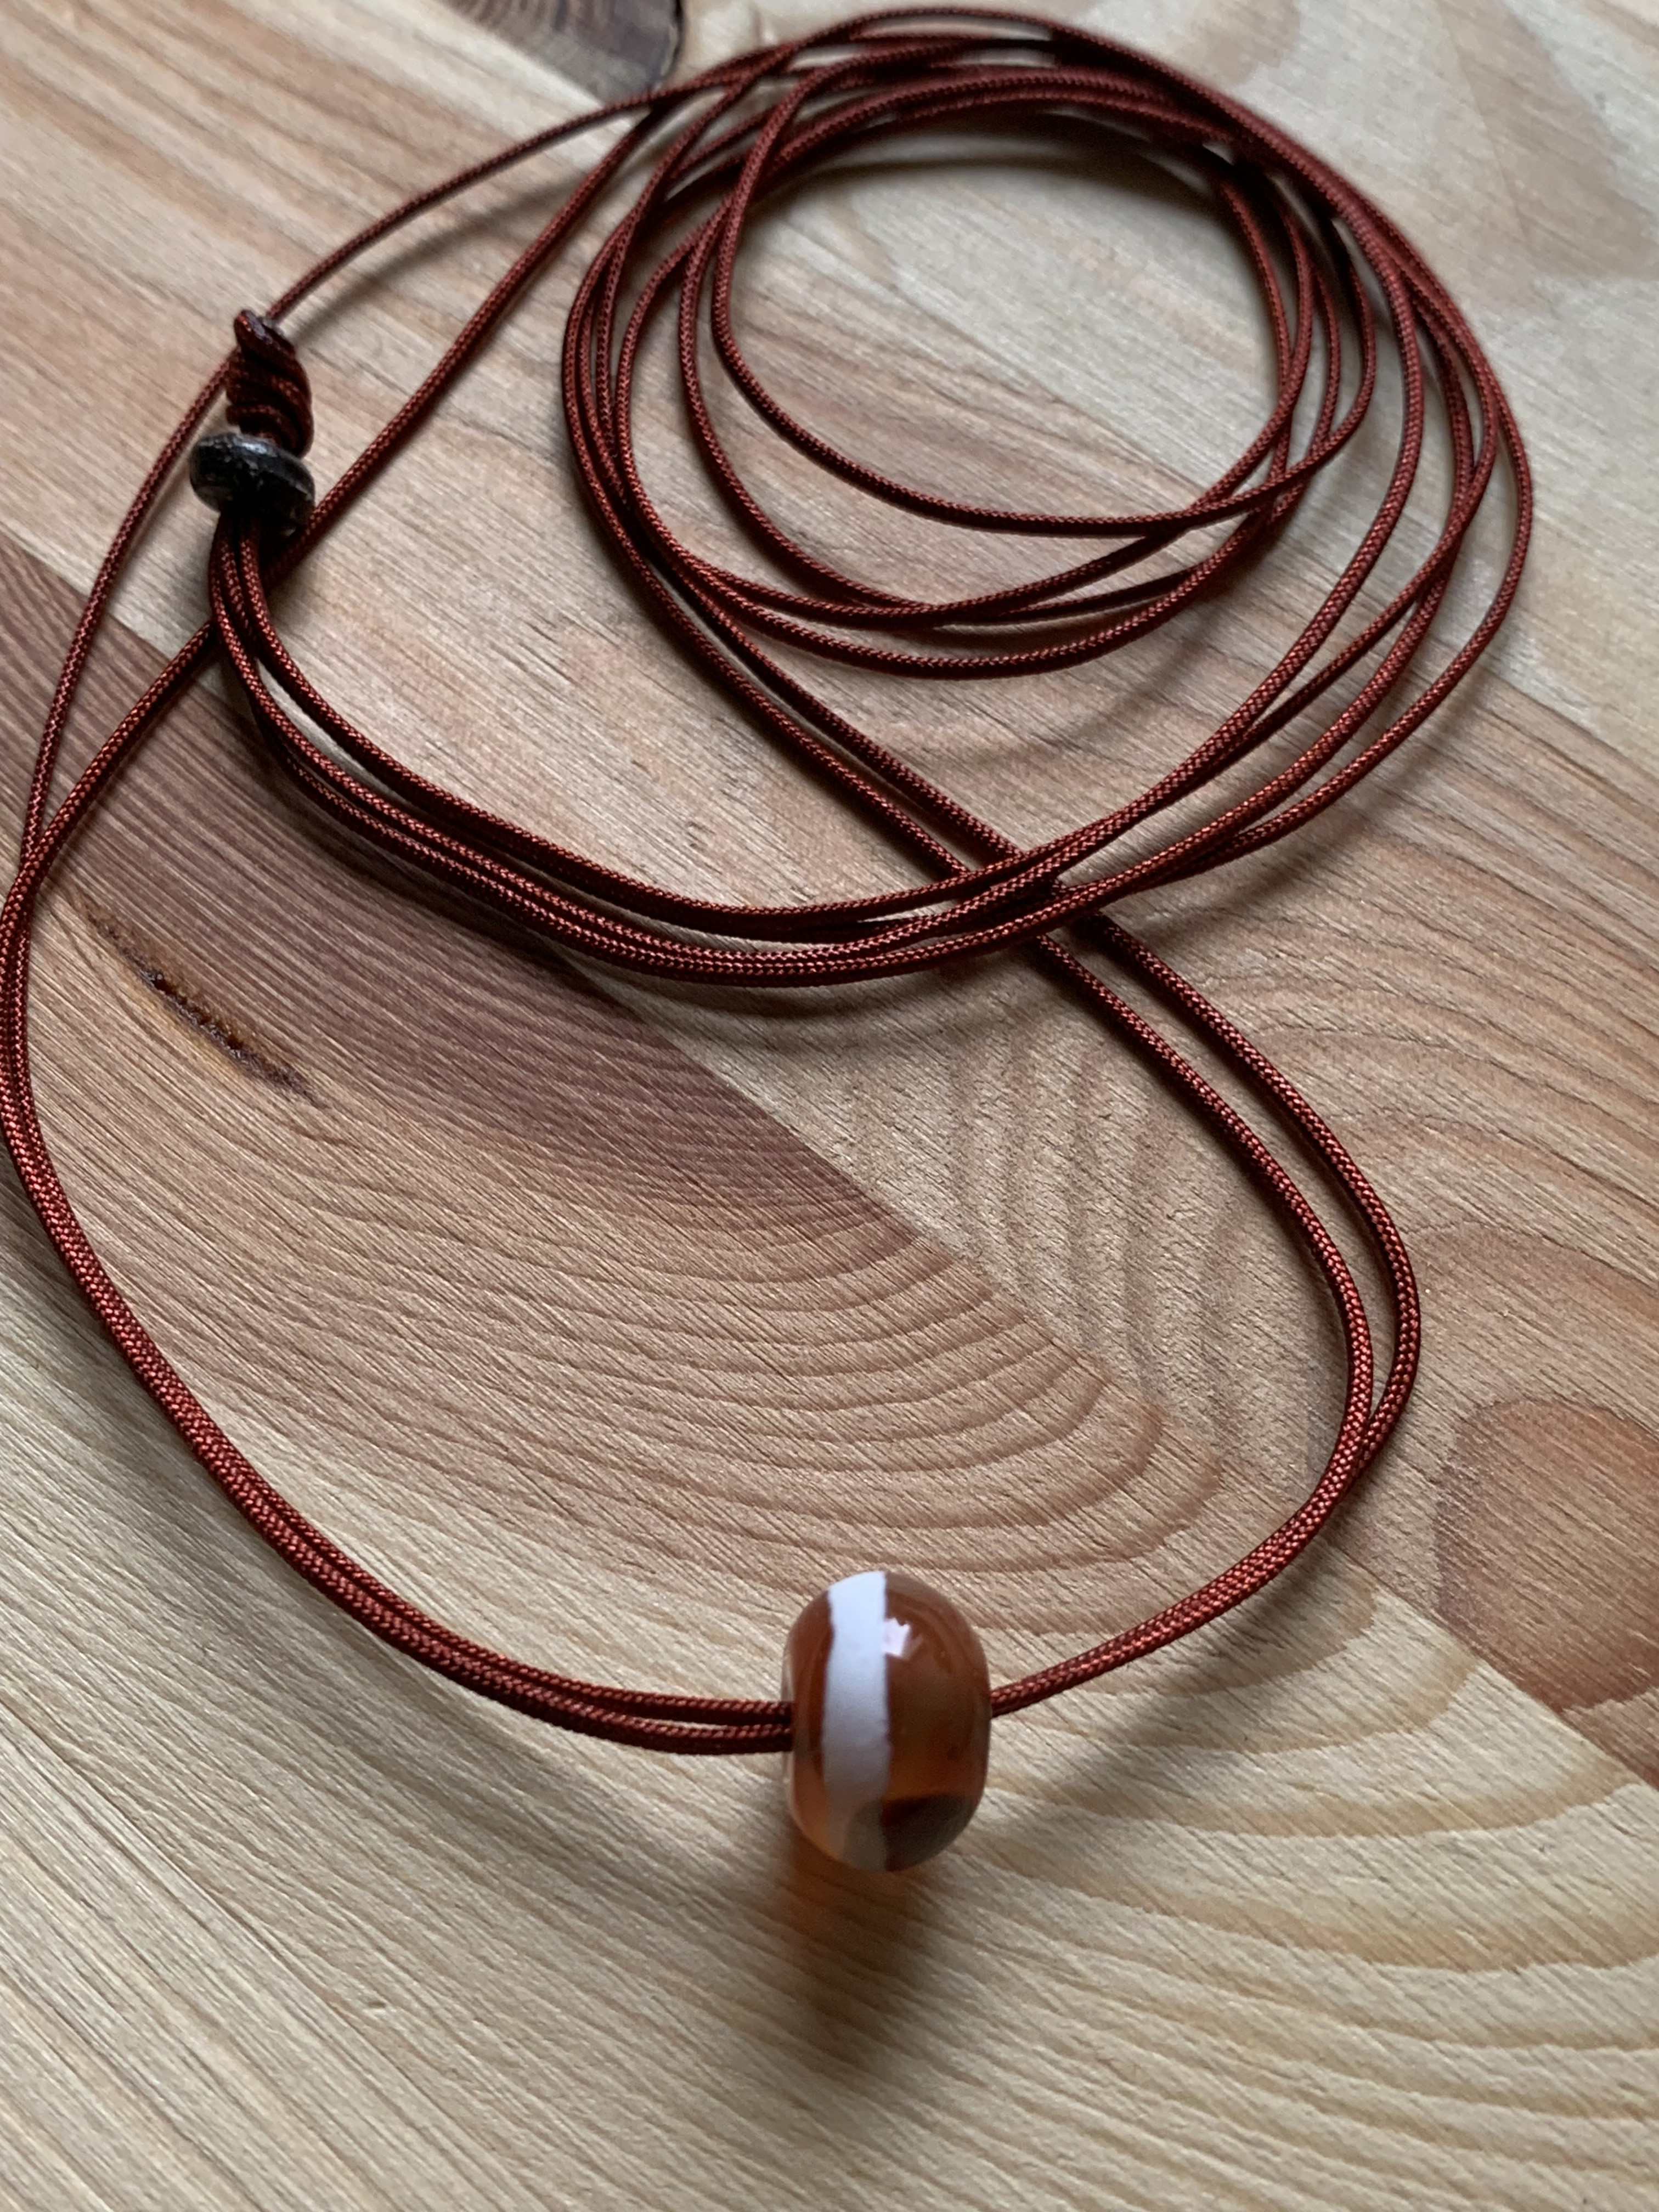 薬師天珠のお紐仕立て無段階調整可能ネックレス お紐長めのネックレス 